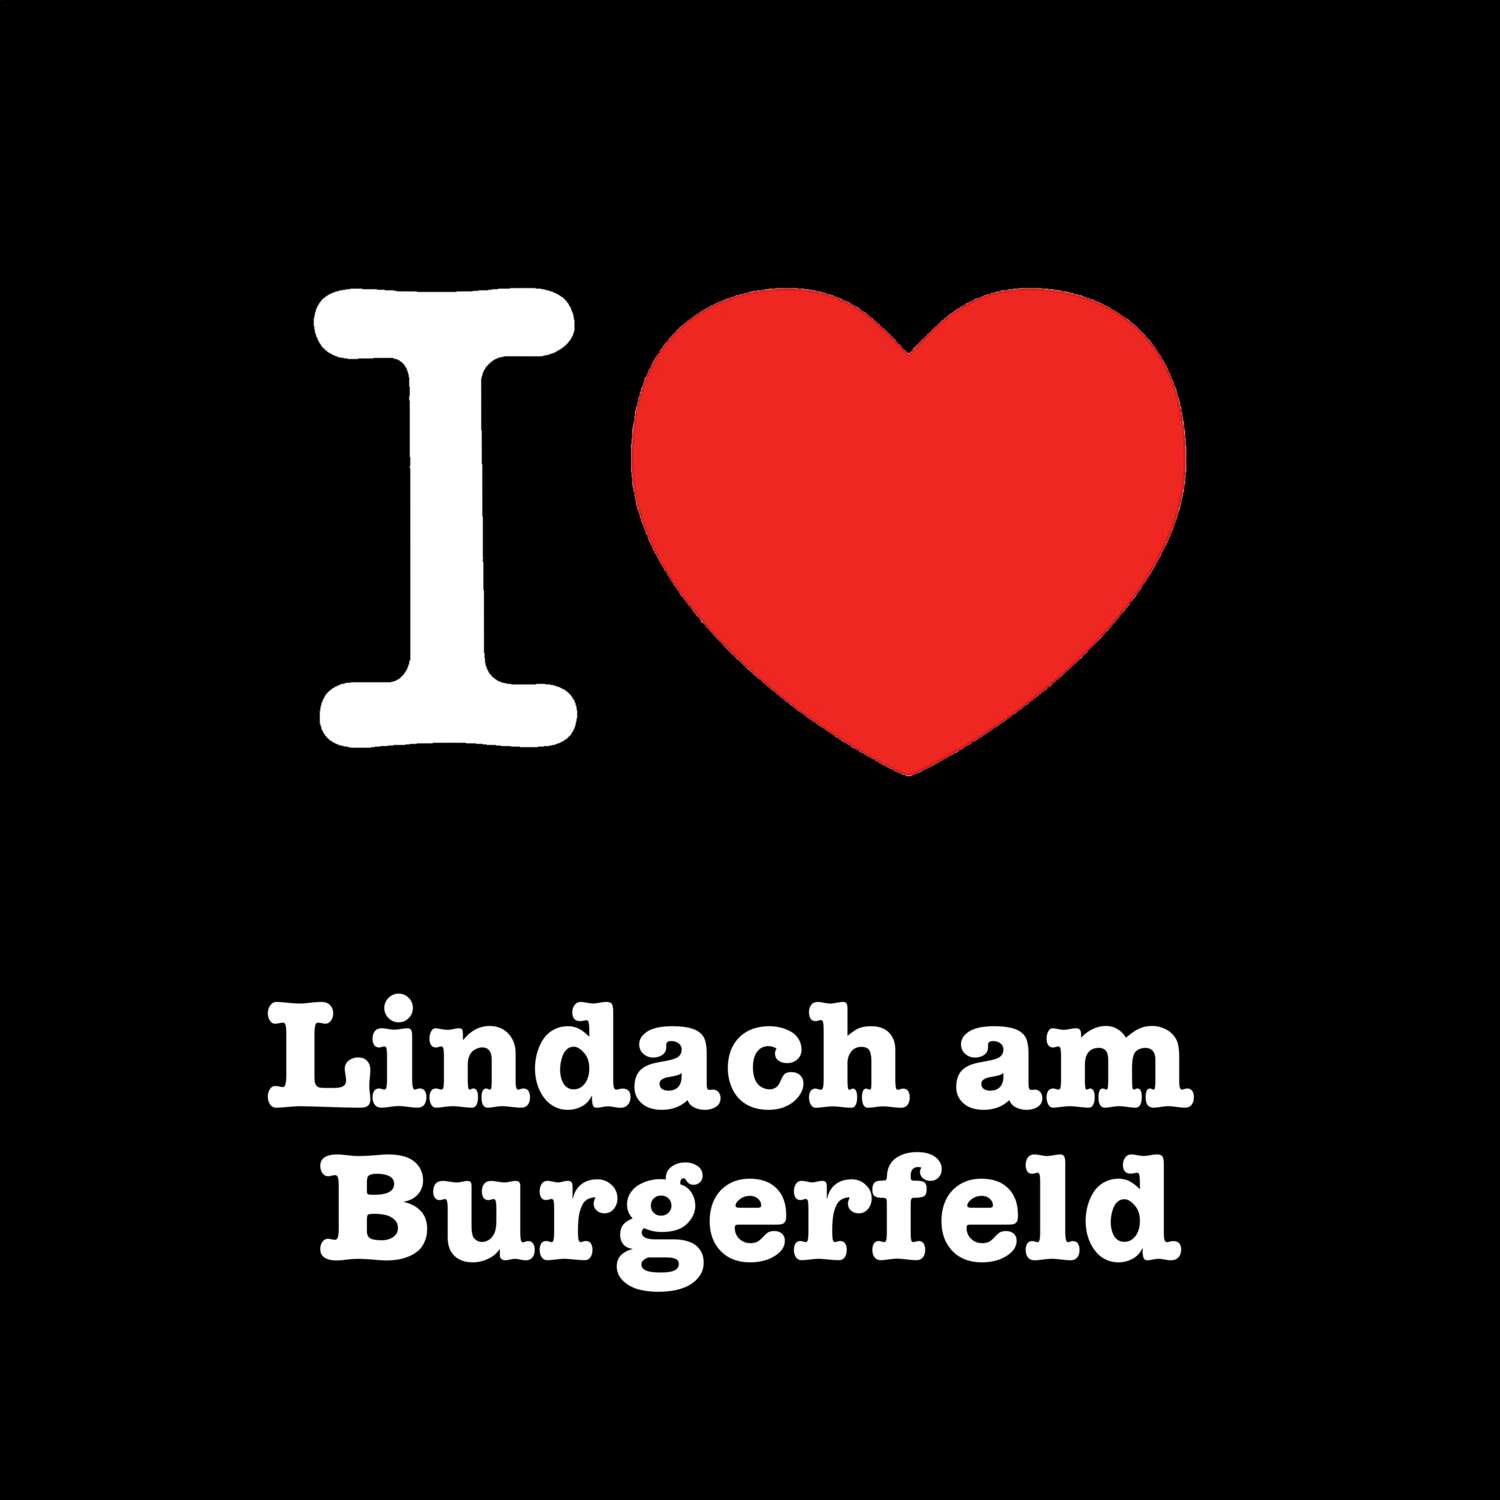 Lindach am Burgerfeld T-Shirt »I love«